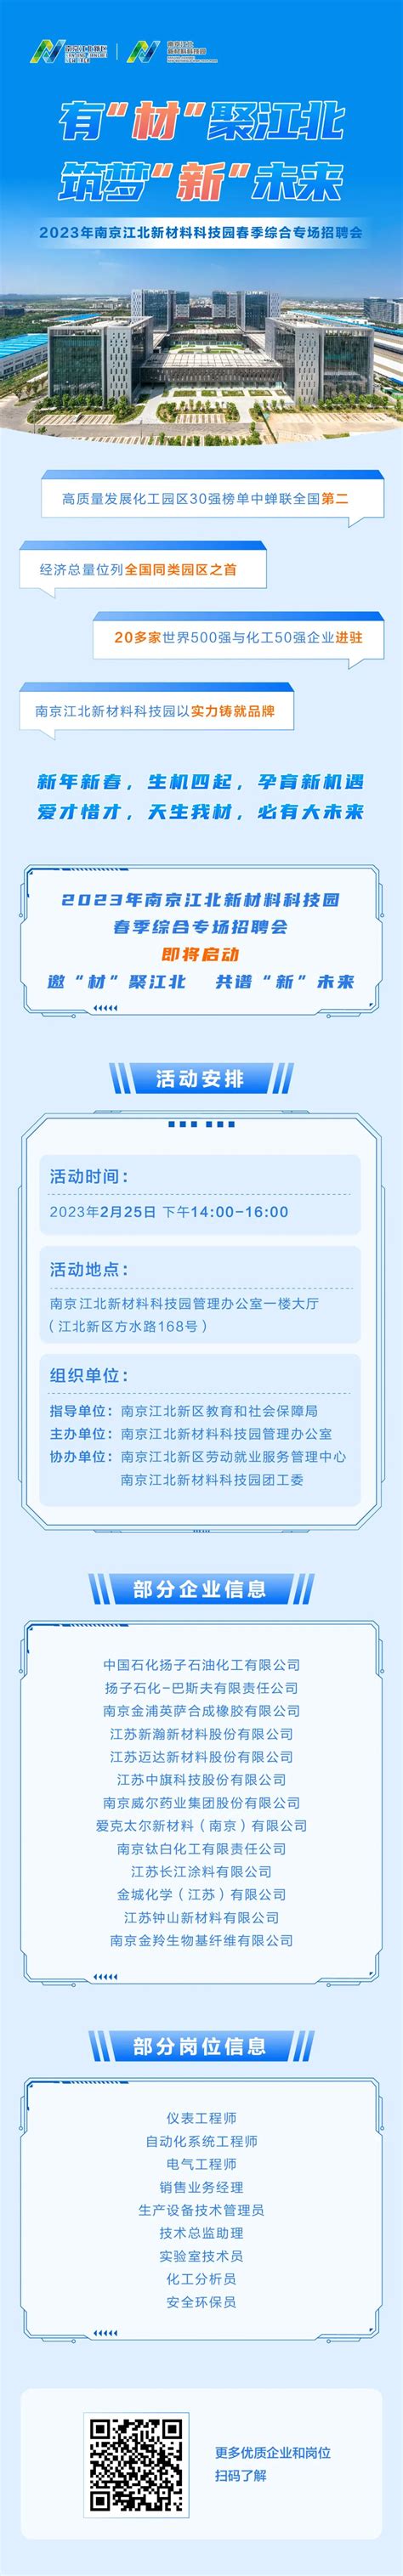 青春逐日·正东航 东航江苏公司即将启动2023年度招飞工作_江南时报